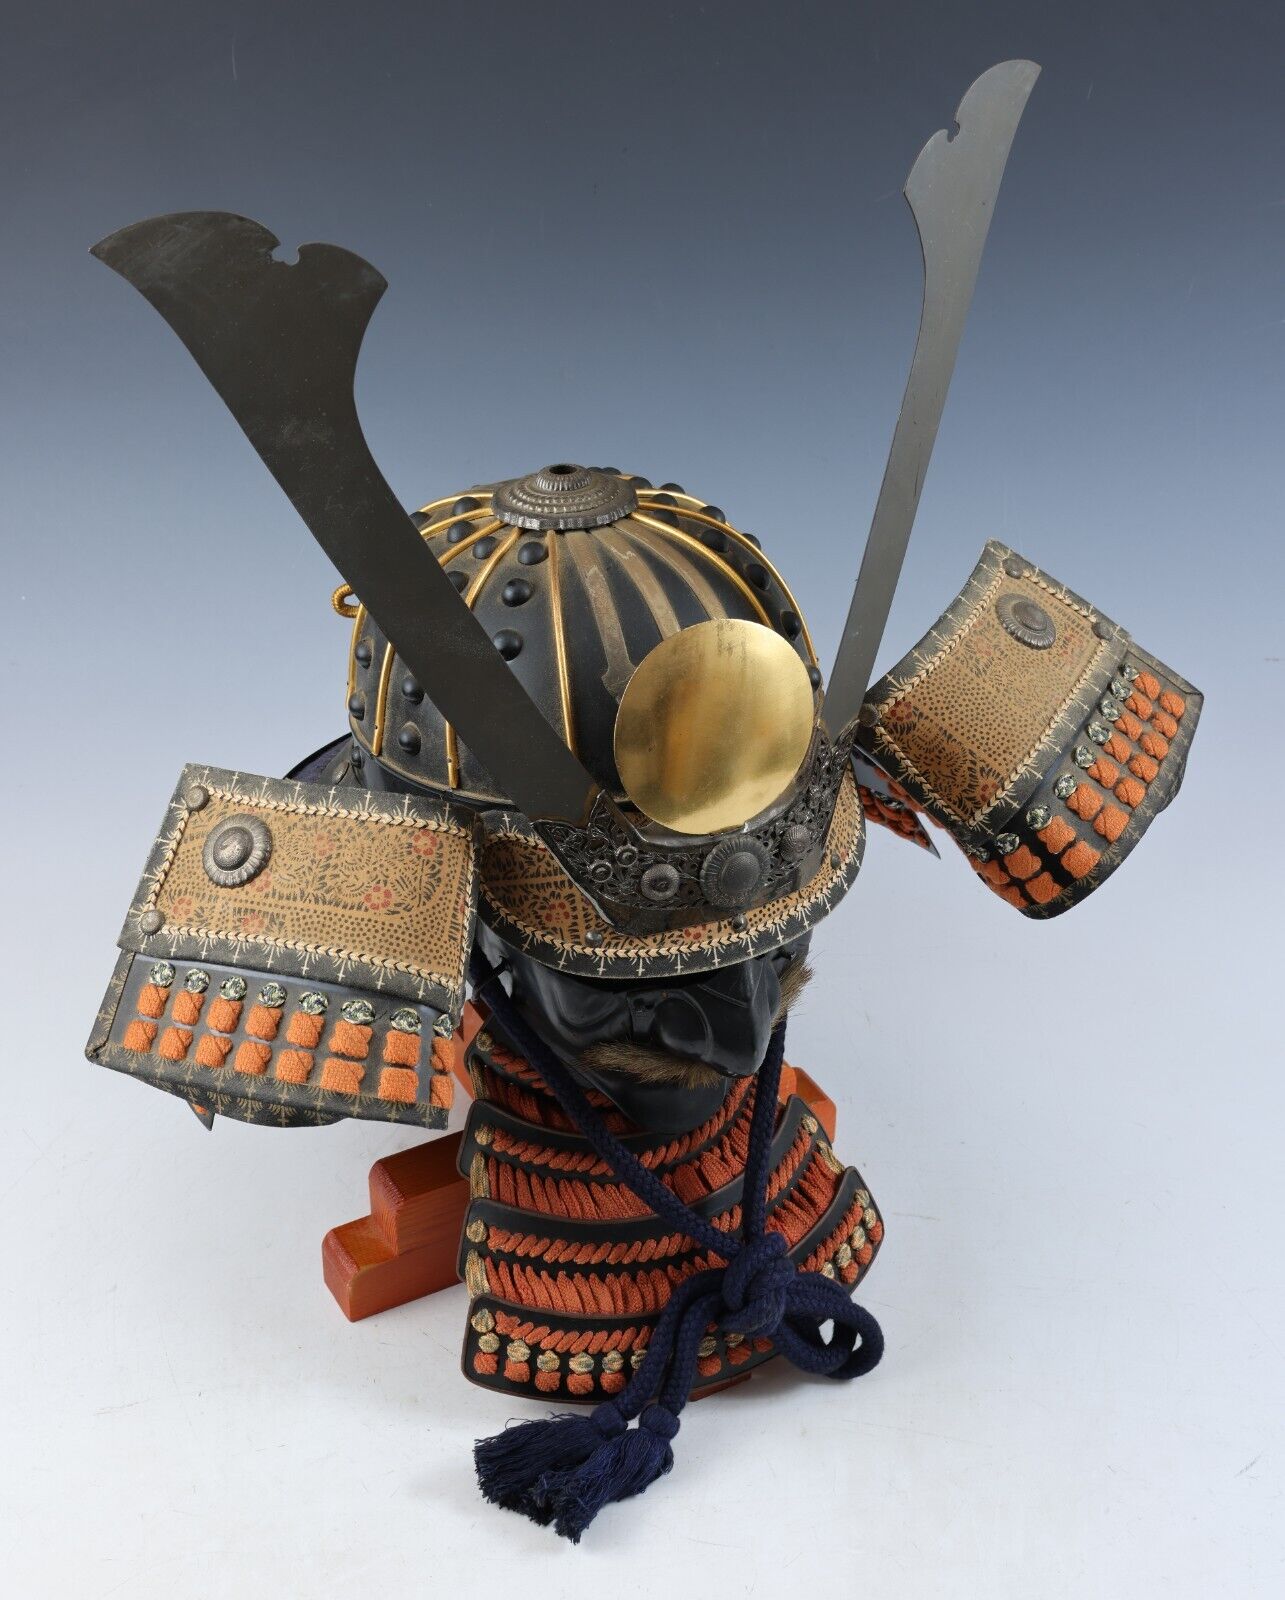 Antique Collectible Japanese Samurai Armor Kabuto Helmet with a Mask Headgear.